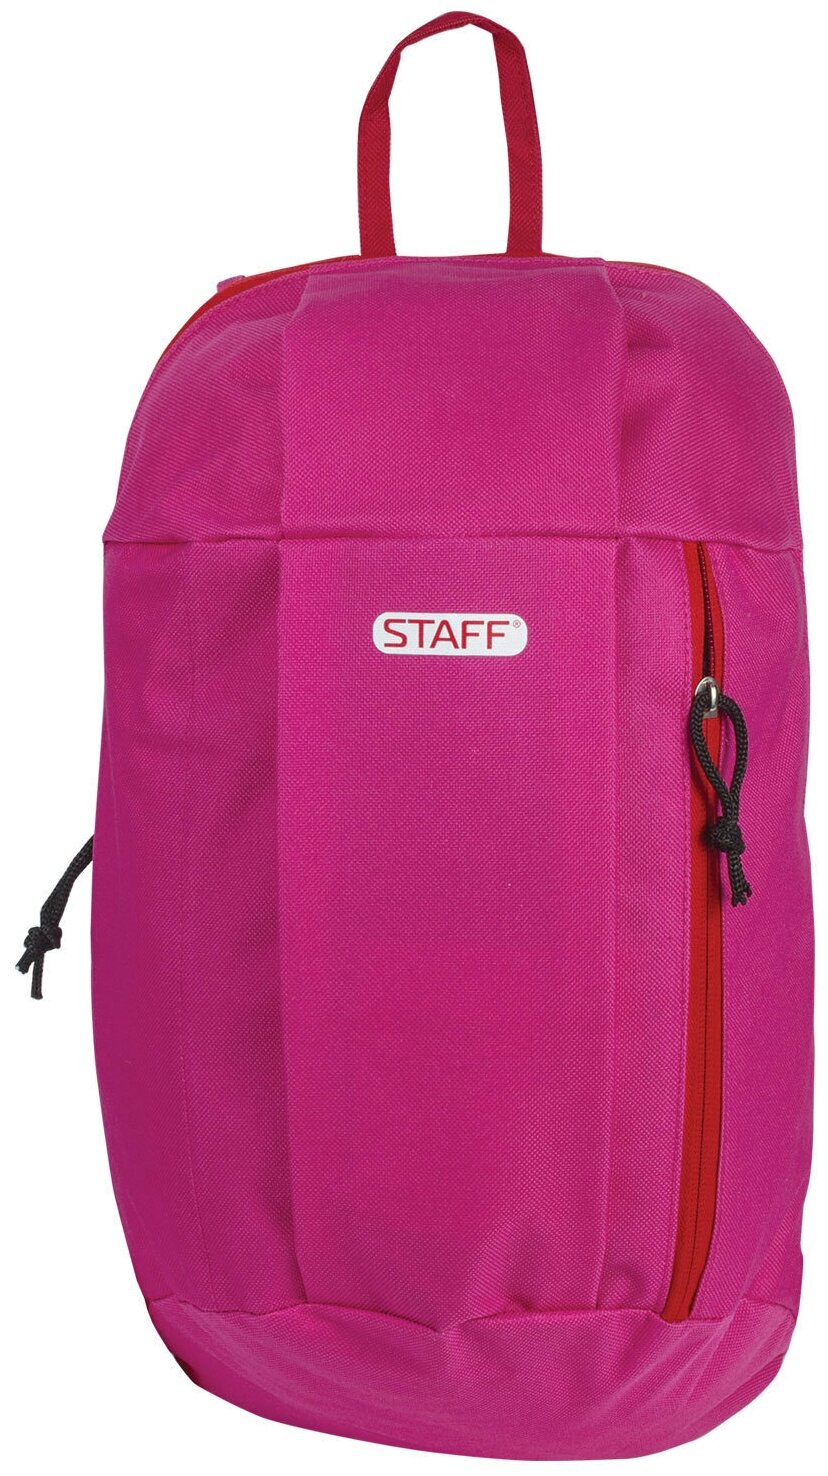 Рюкзак Staff AIR, универсальный, розовый, 40х23х16 см (227043)